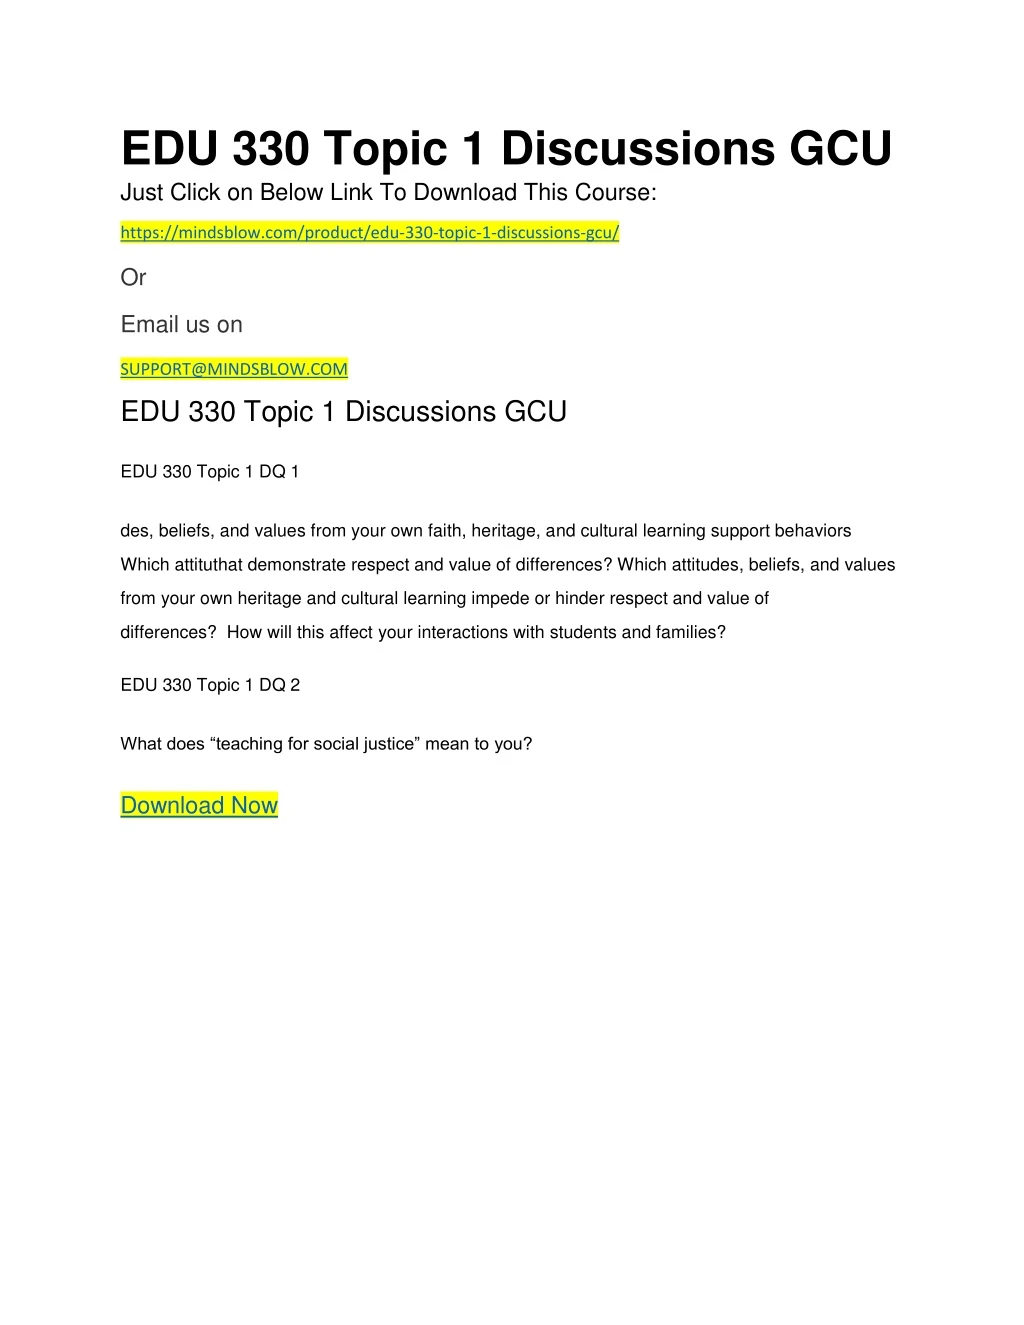 edu 330 topic 1 discussions gcu just click